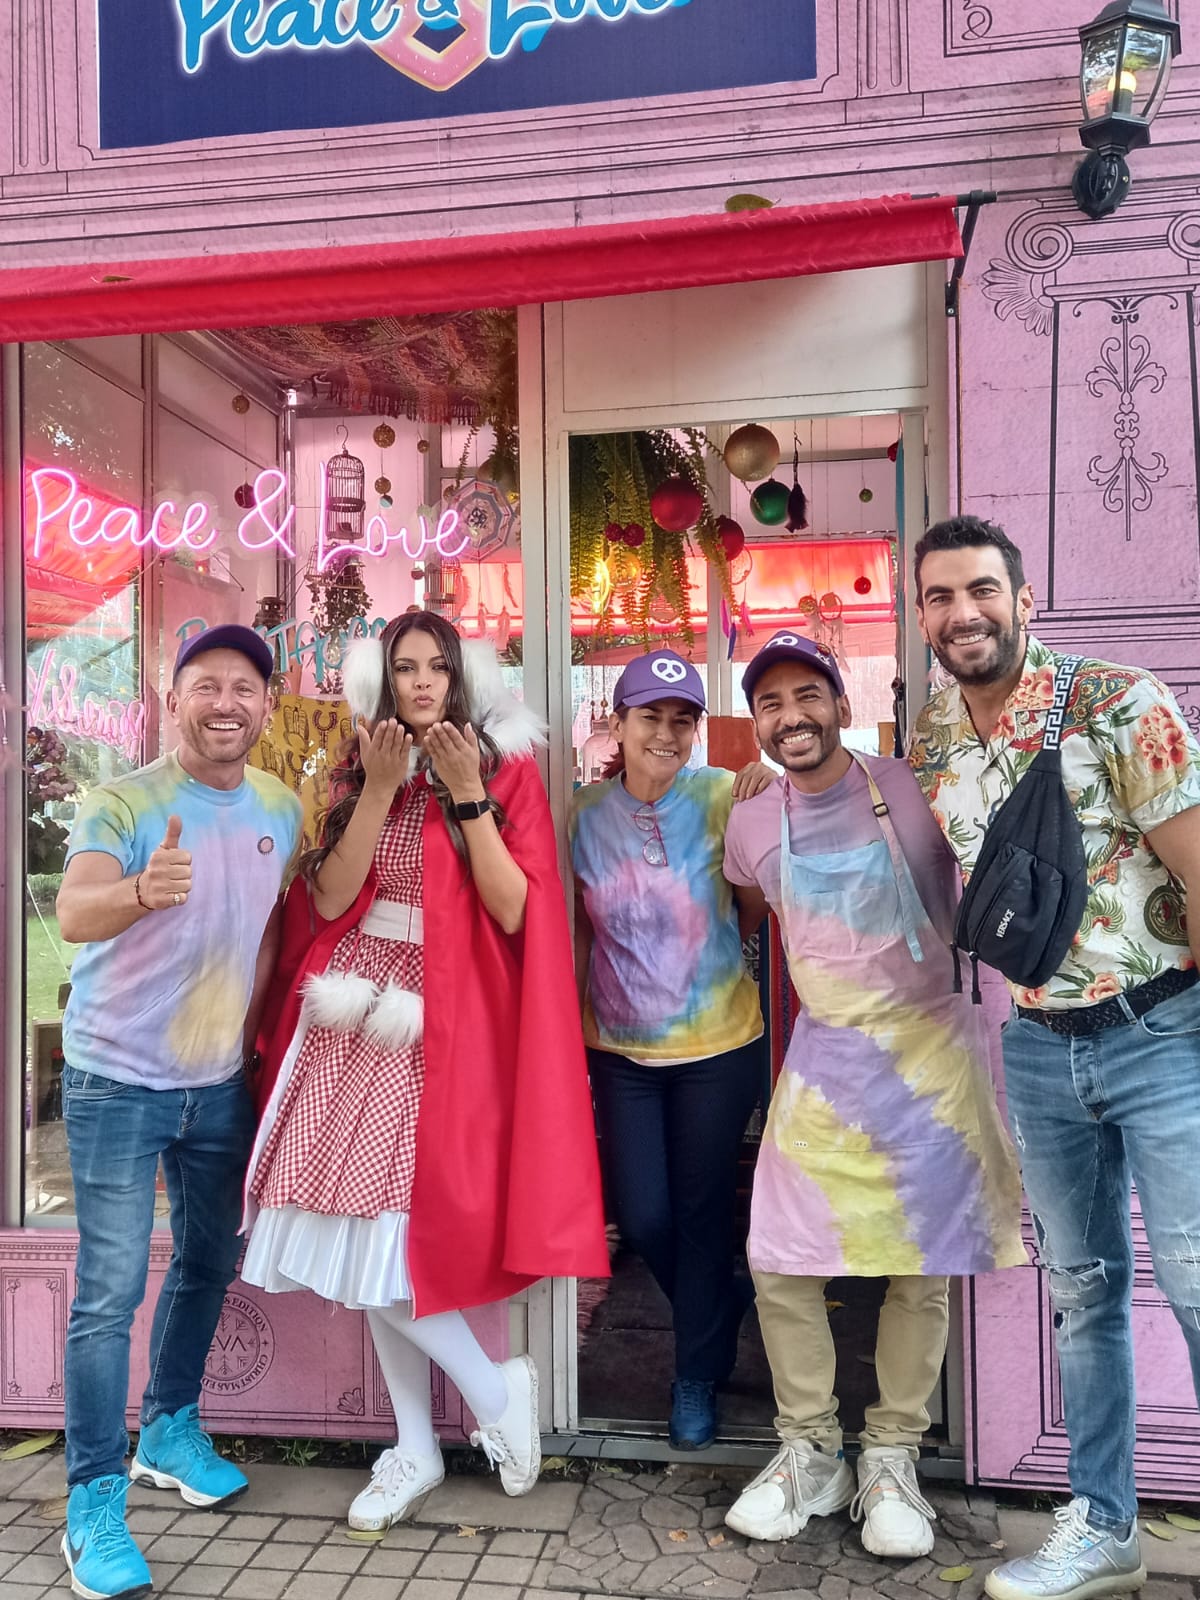 El restaurante Preace&Love es uno de sus proyectos con más vinculo entre la comunidad. Google Colombia los destacó en junio, Mes del Orgullo.